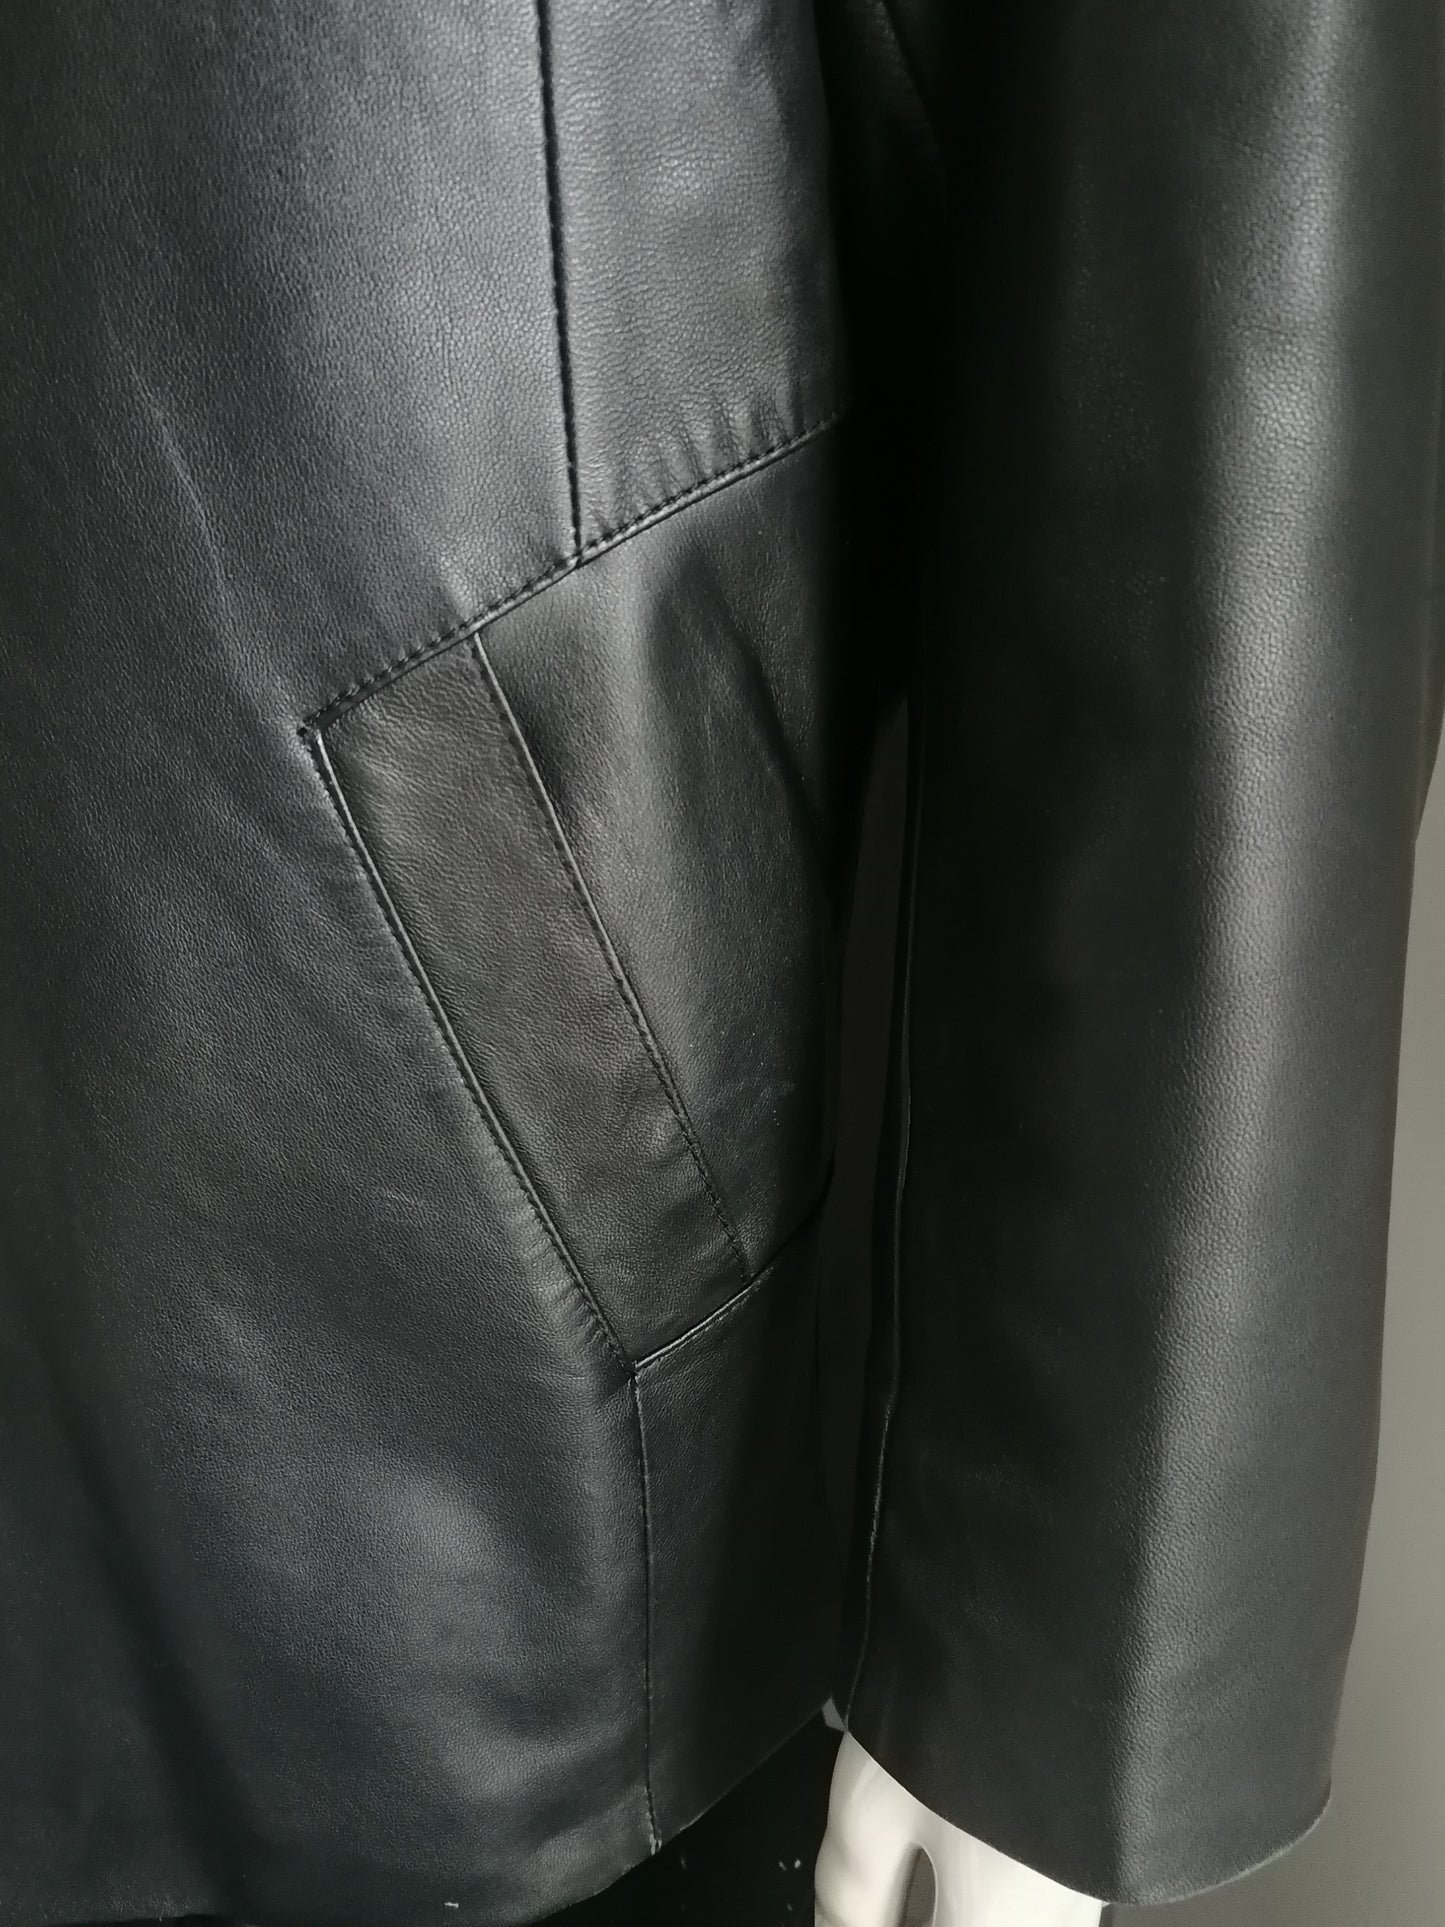 Veste en cuir de mode en cuir L&B avec boutons. Cuir doux lisse noir. Taille 54 / L.